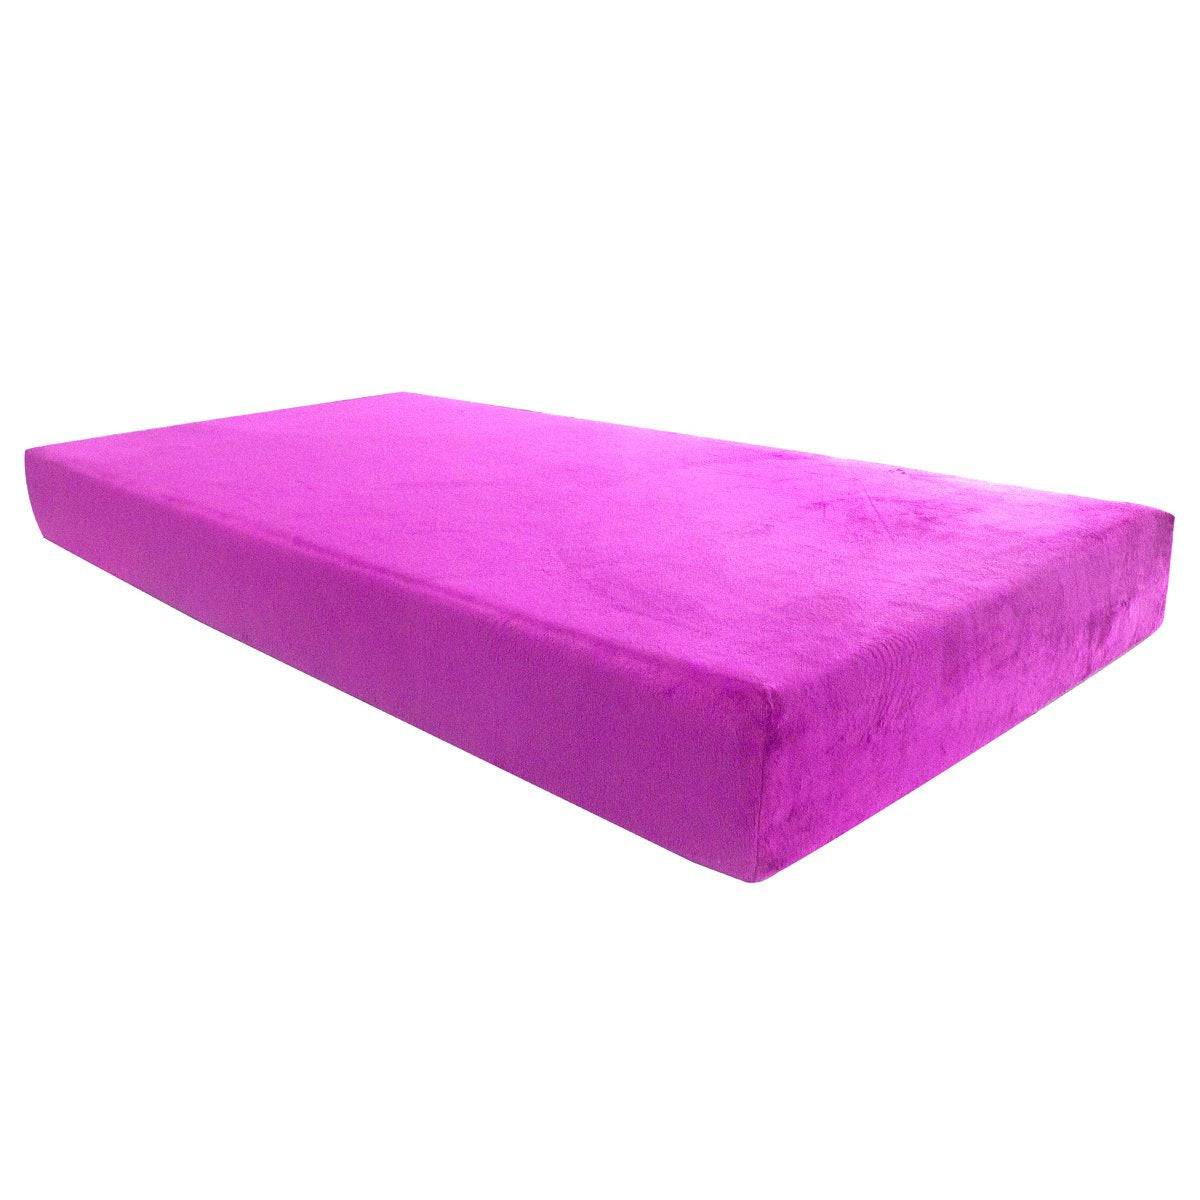 Is a memory foam mattress good for kids?